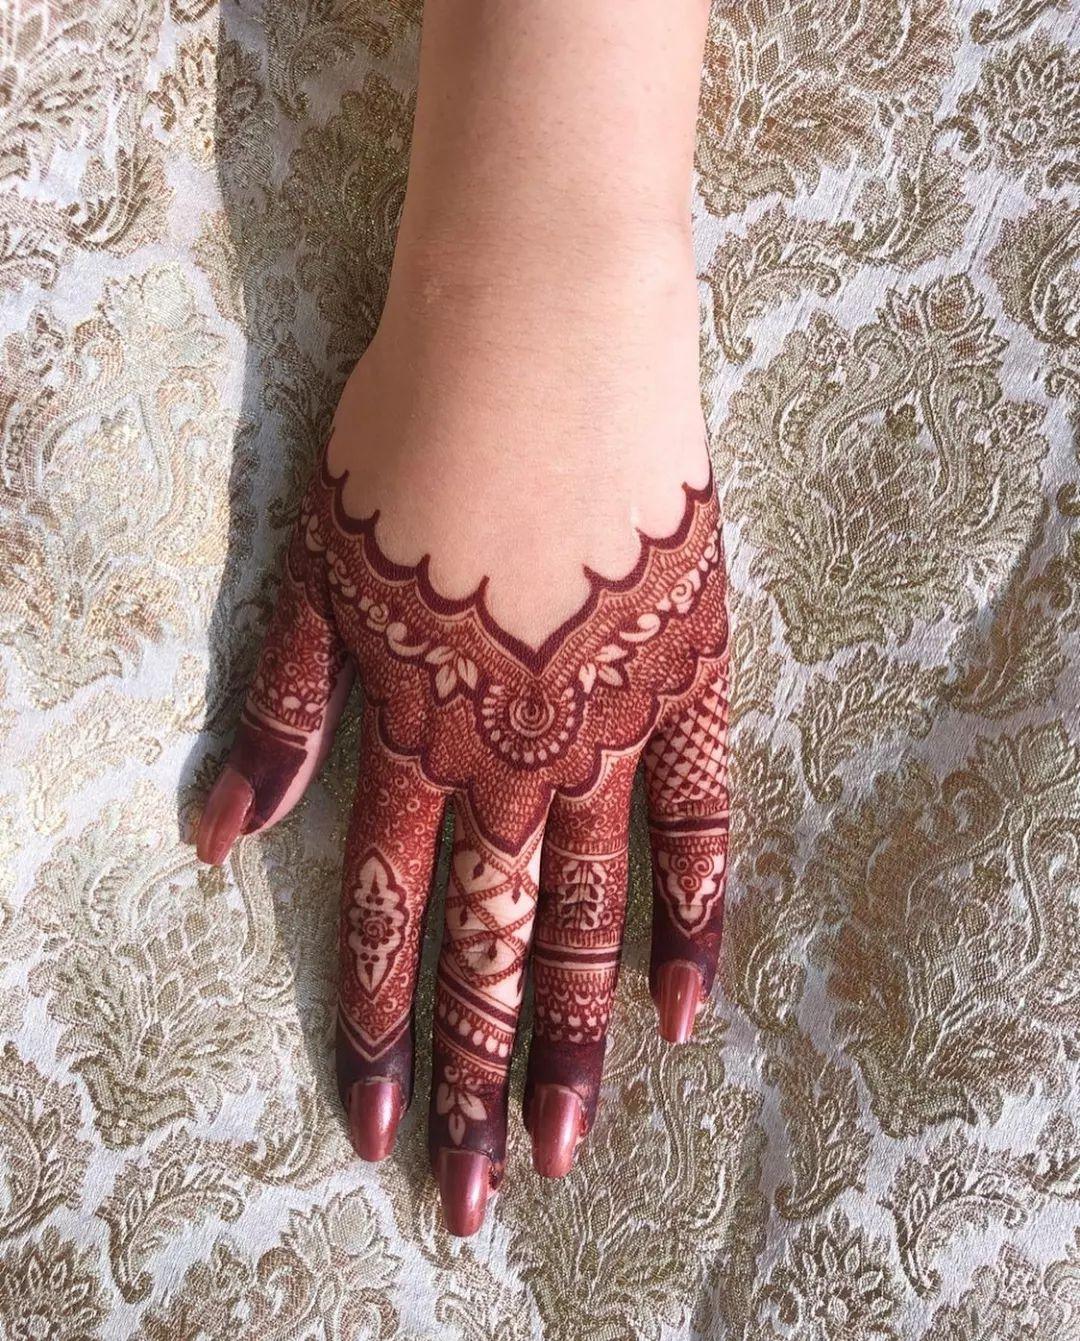 Foot Mehndi Design For Bridal Try This Out | Mehndi Designs: दुल्हन के  पैरों में खूब सजेंगी ये मेहंदी डिजाइन, तारीफ करते थकेंगे नहीं लोग